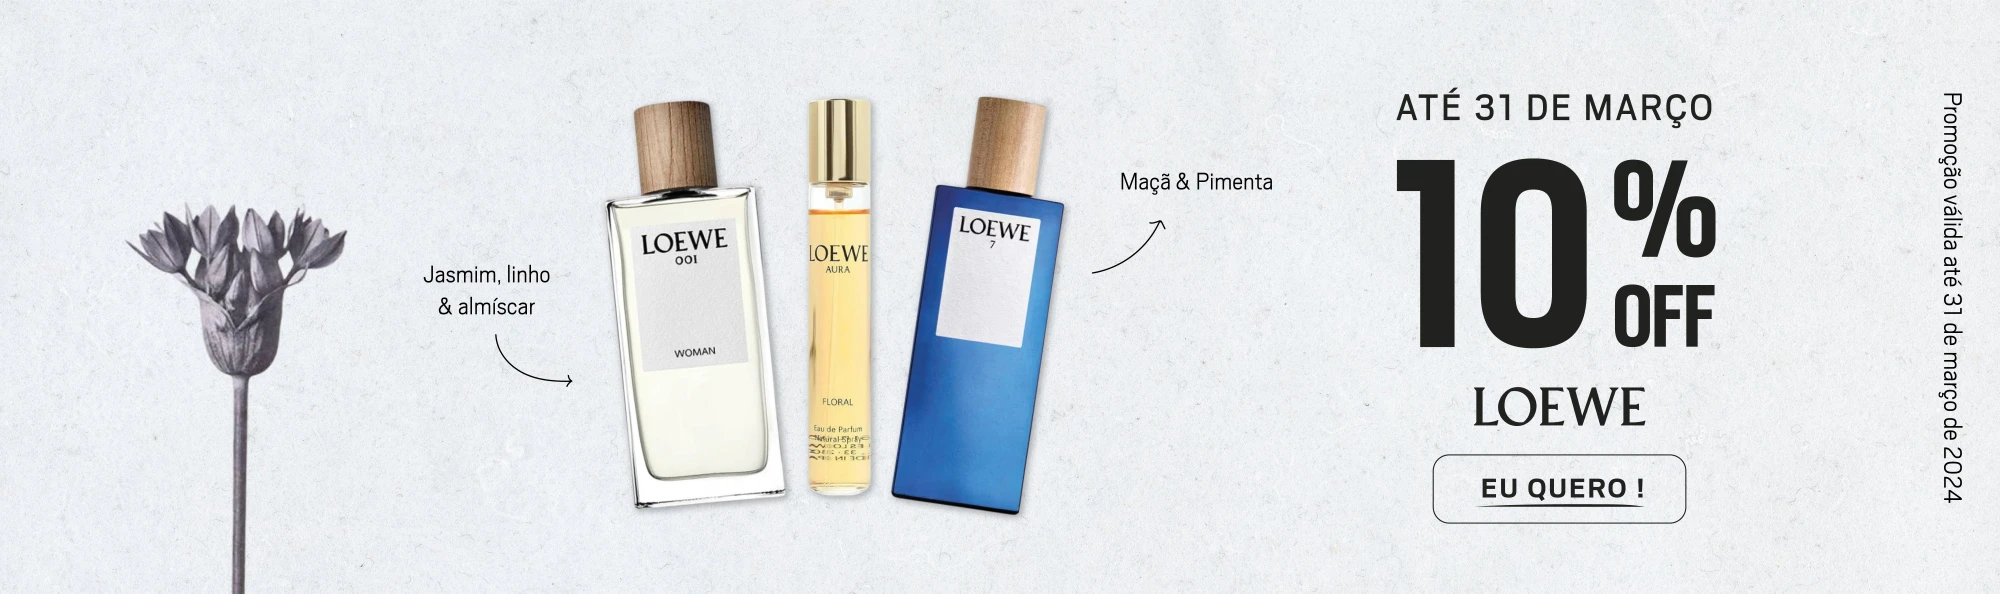 Perfumes.pt_Março2-02.webp